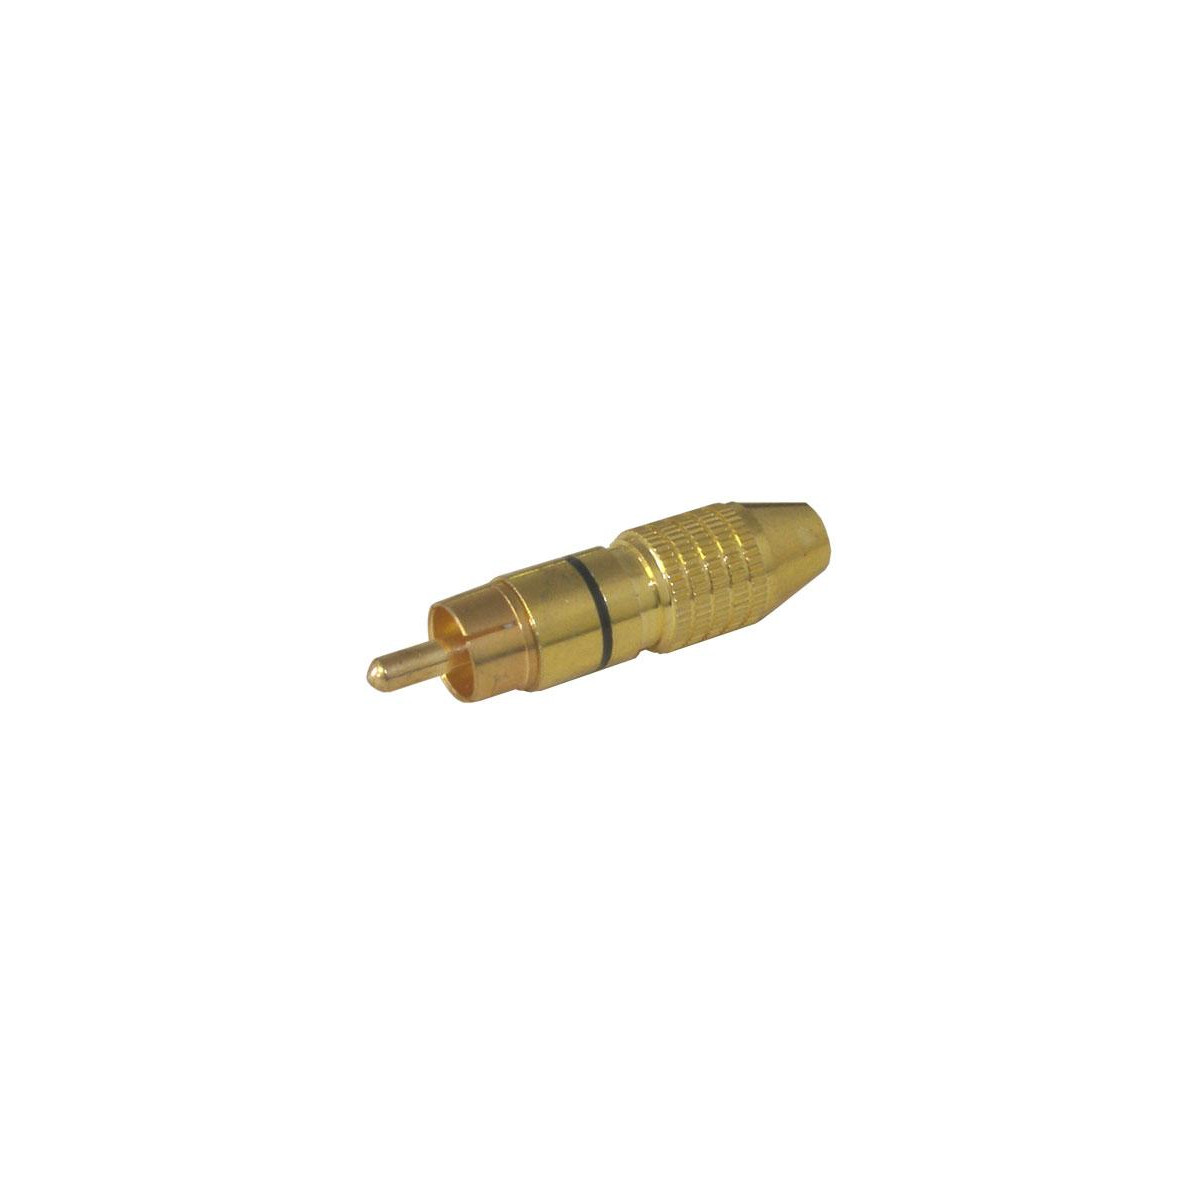 More about Konektor CINCH kabel kov zlatý pr.6mm černý